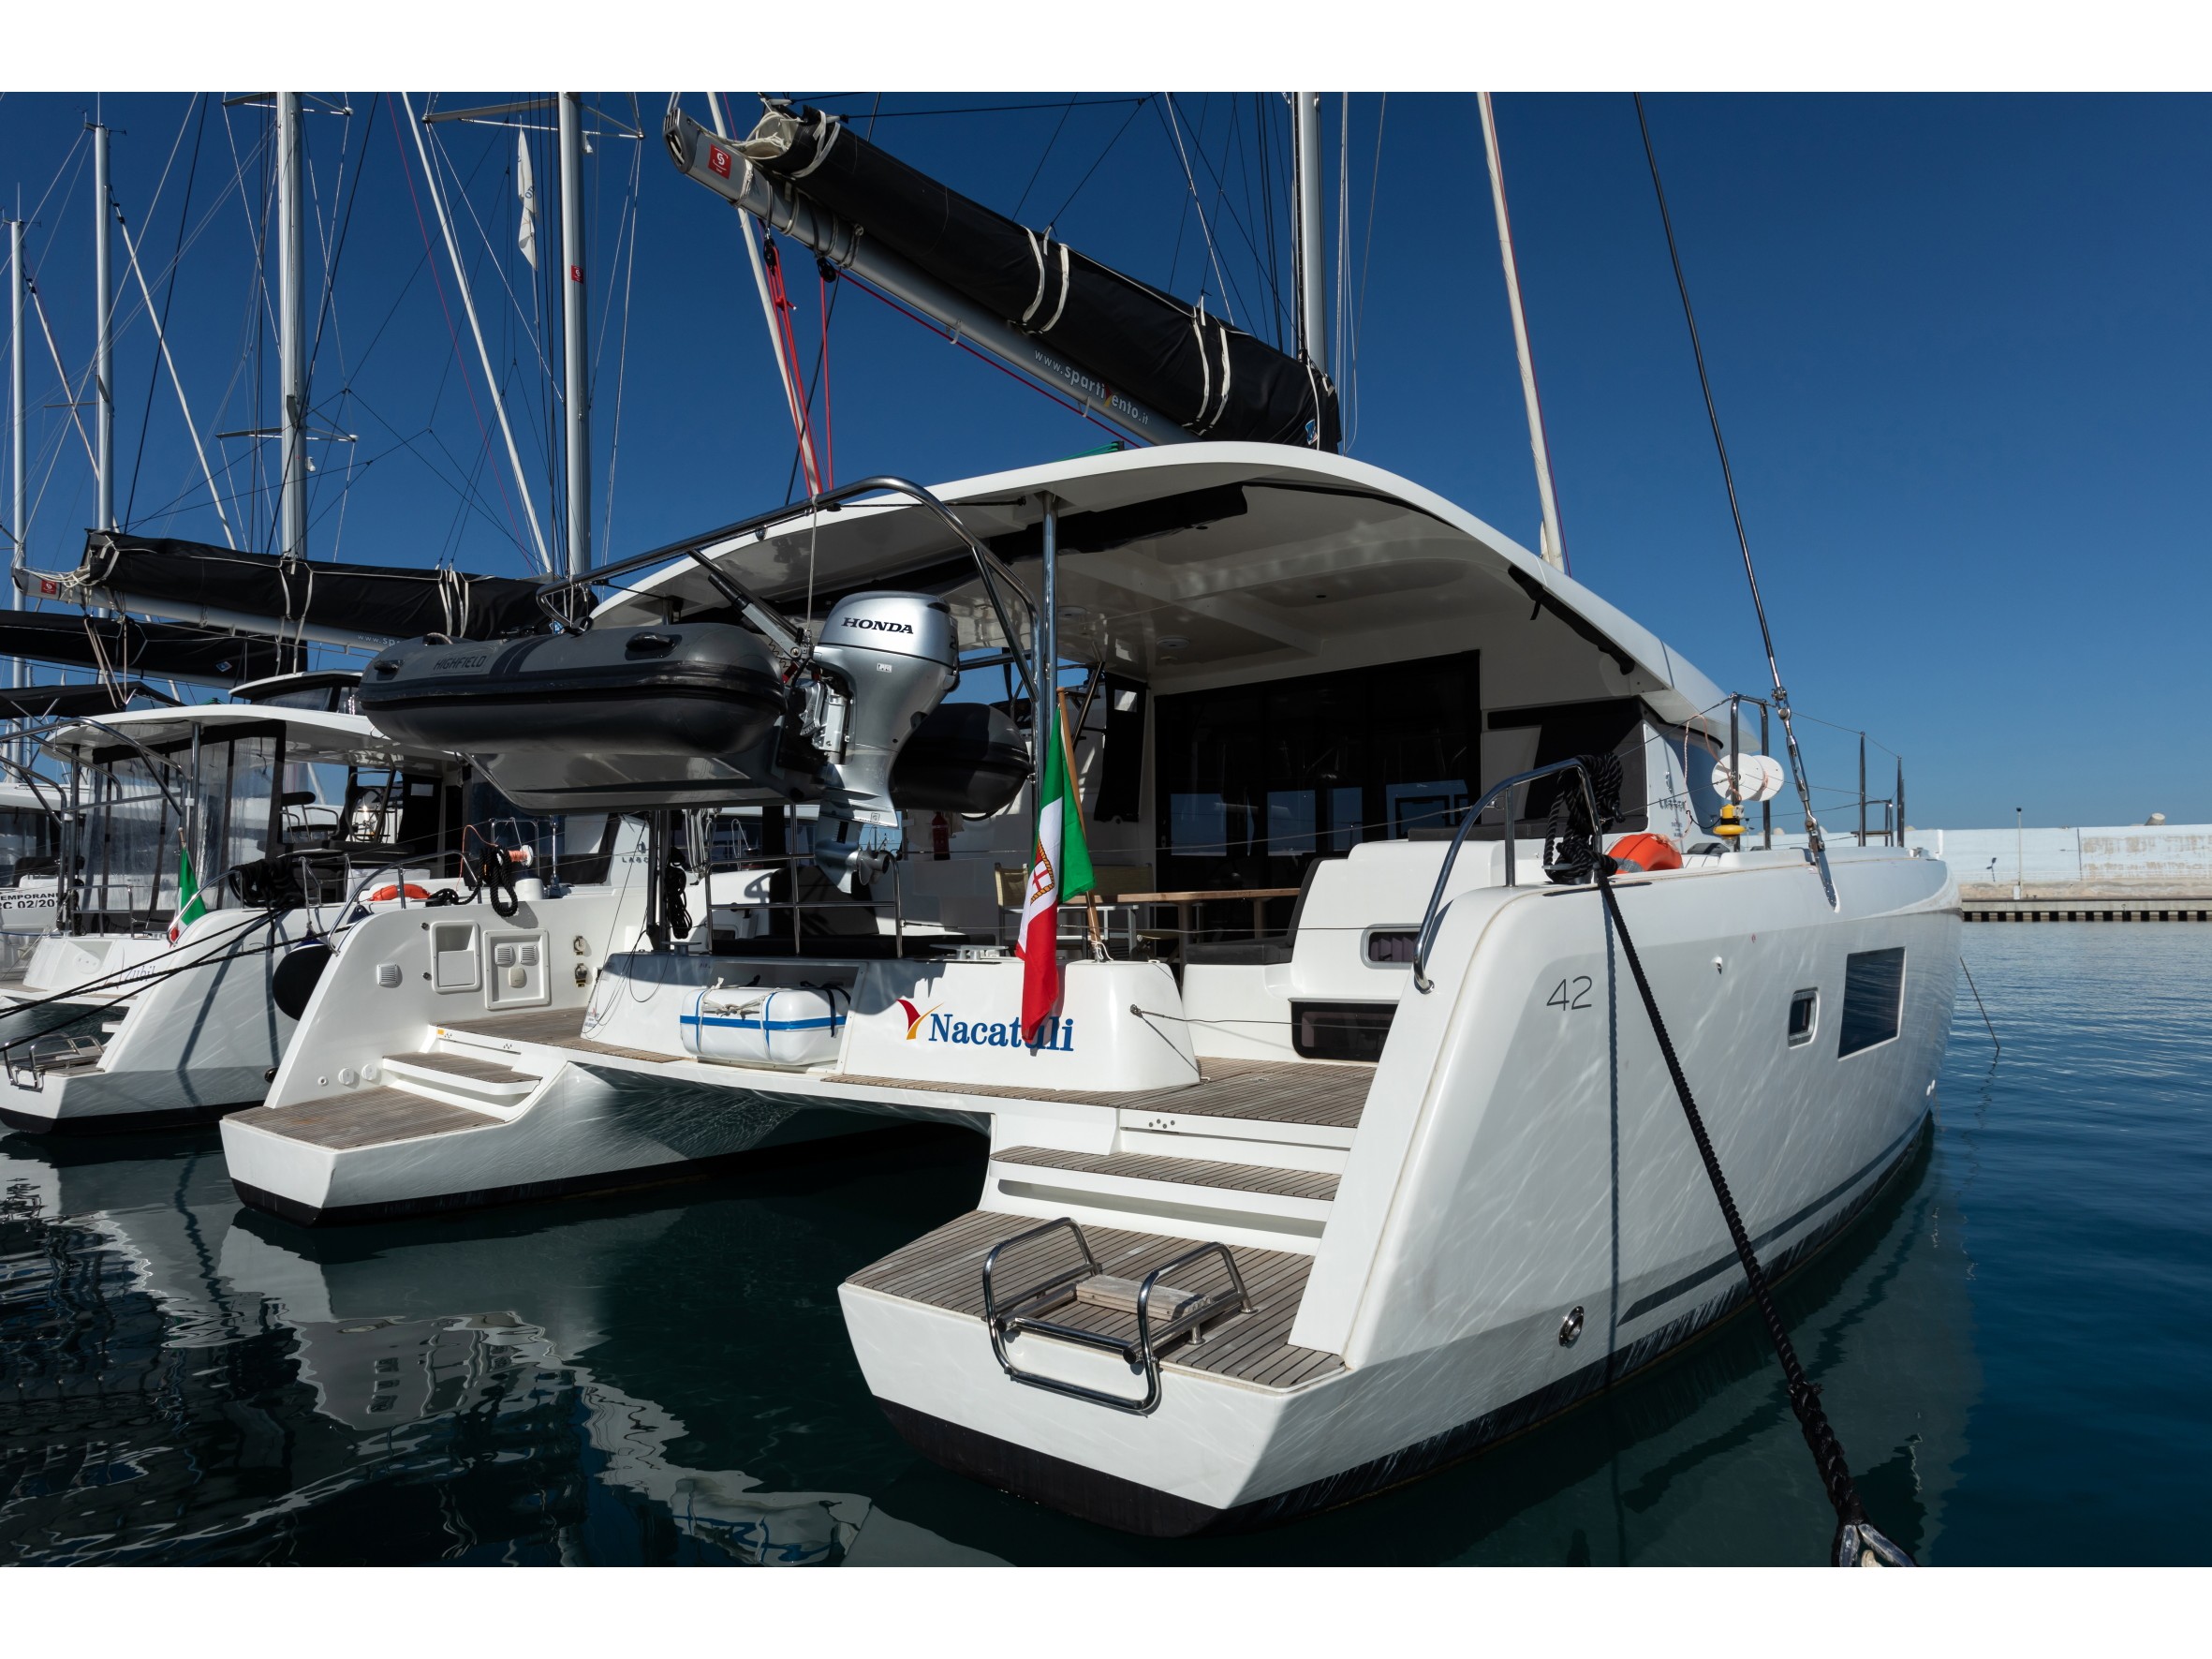 Lagoon 42 - Yacht Charter Capo d'Orlando & Boat hire in Italy Sicily Aeolian Islands Capo d'Orlando Capo d'Orlando Marina 2